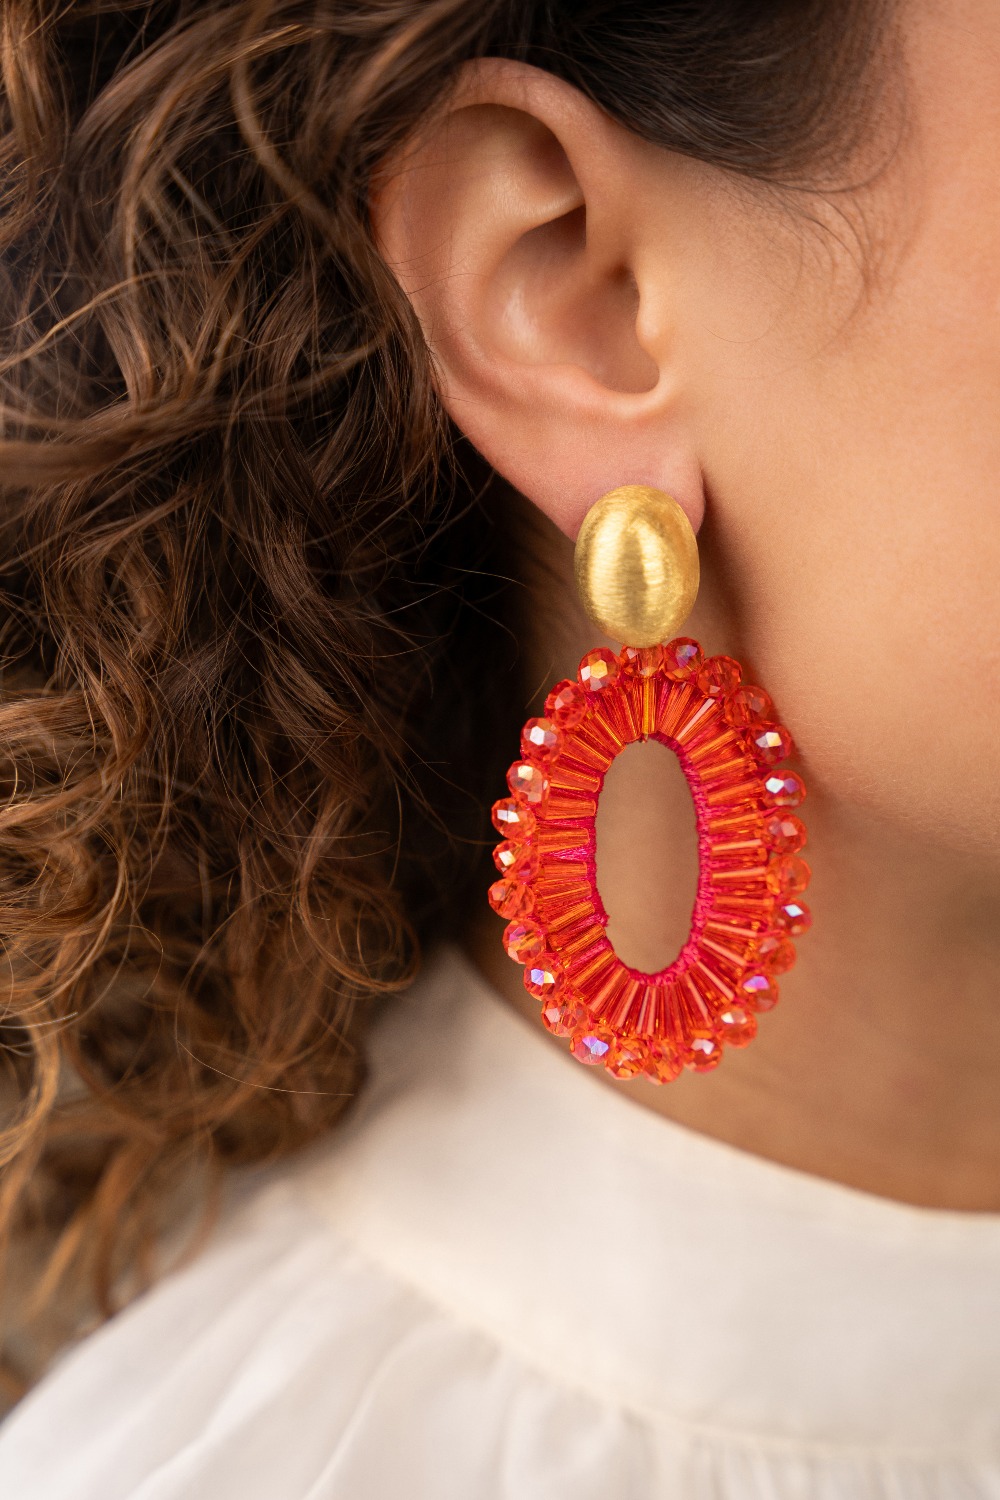 Orange earrings Ann-Mary oval double lion